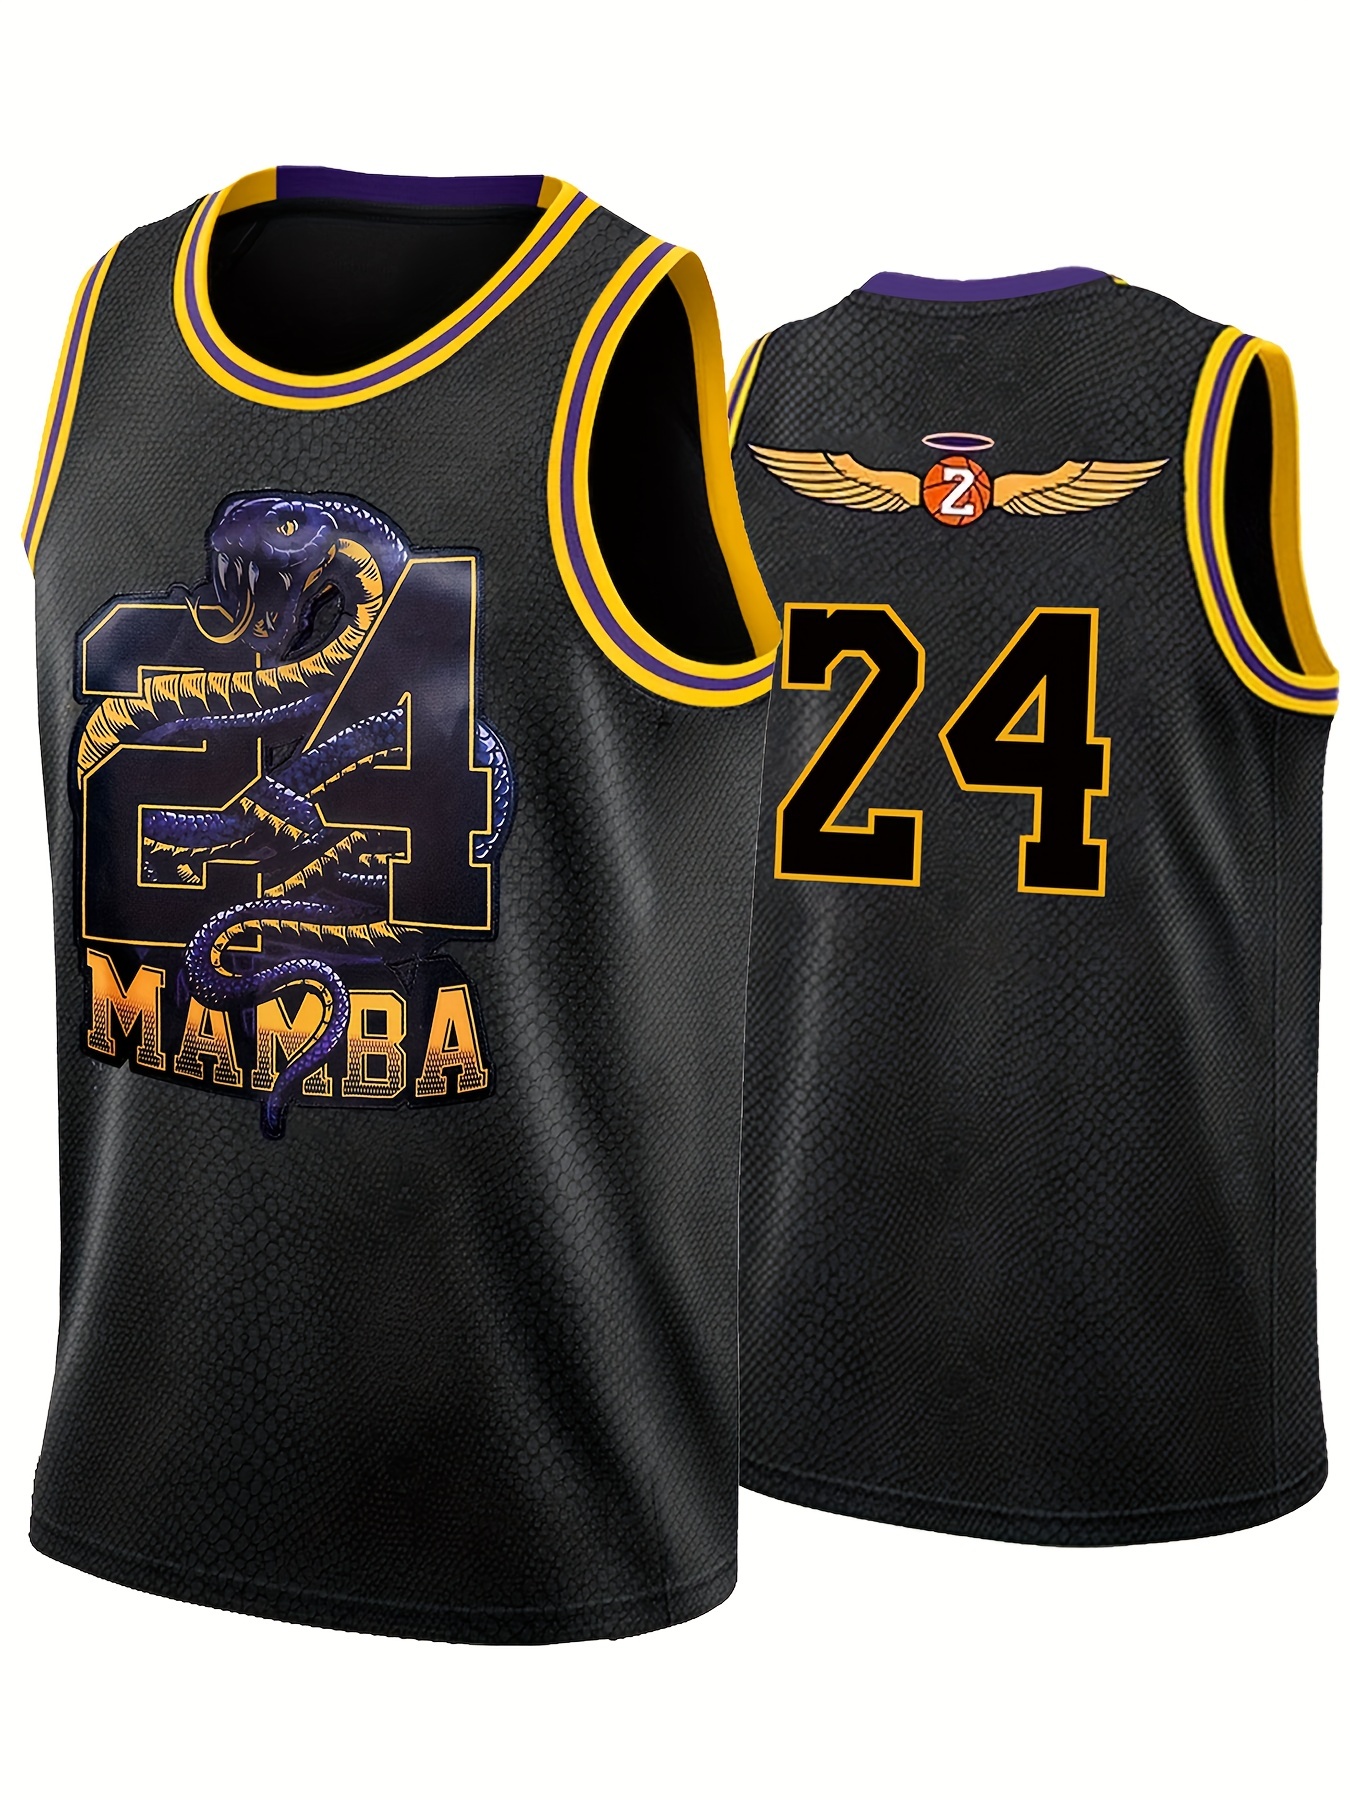 Kobe Bryant Stitched Jersey Men's Pro Basketball Jersey Black Mamba Edition  